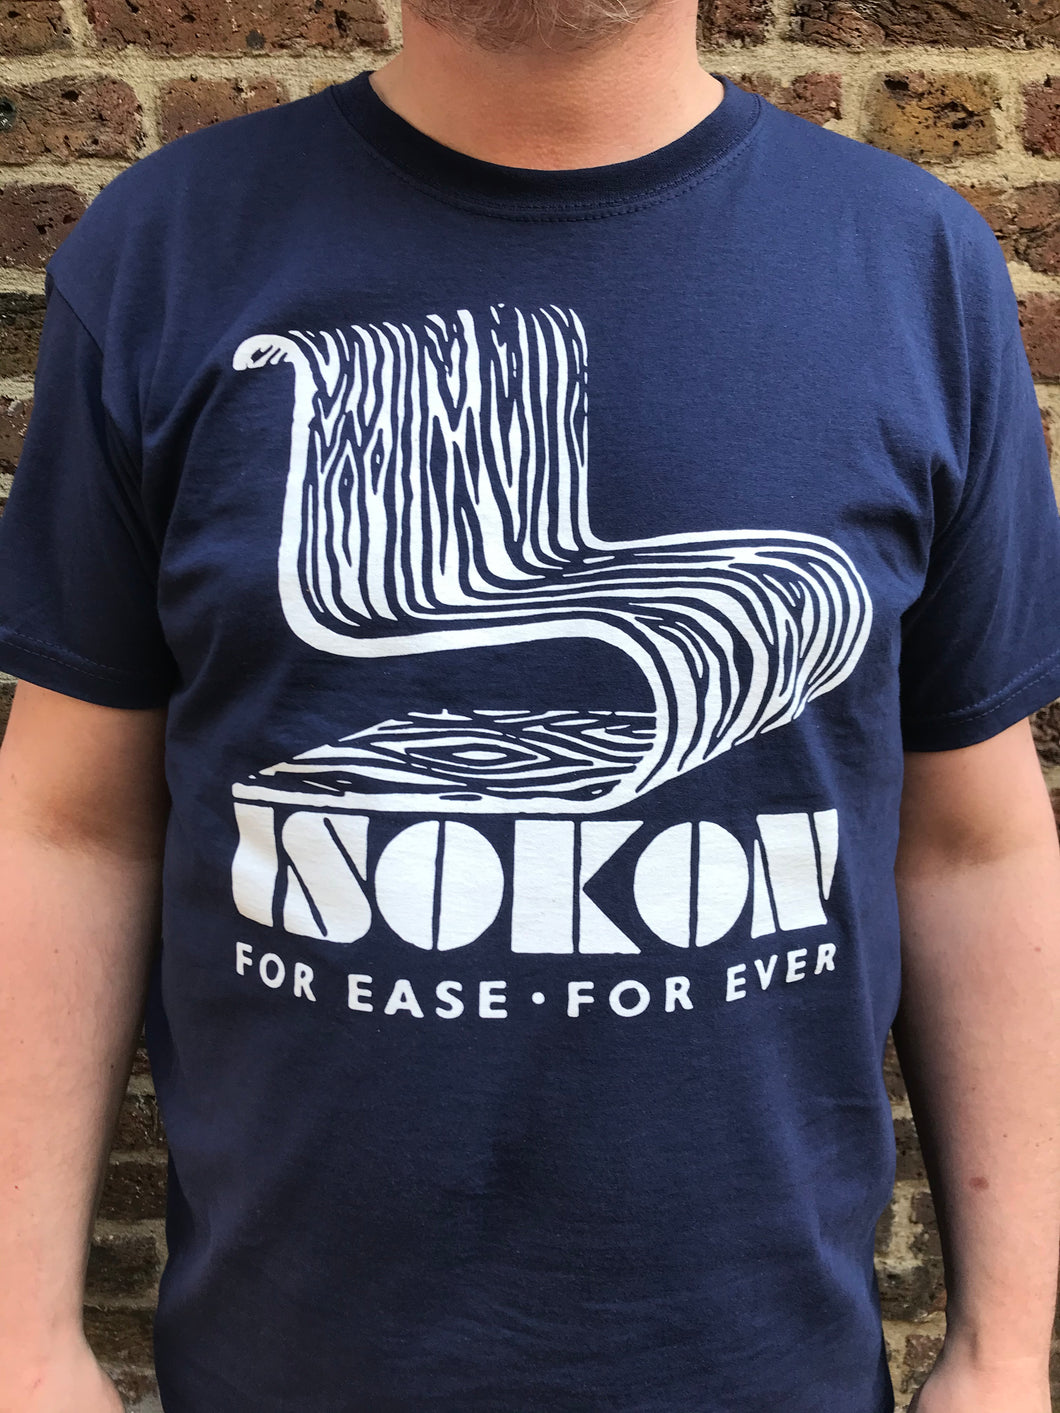 Isokon T-shirt by László Moholy-Nagy navy blue